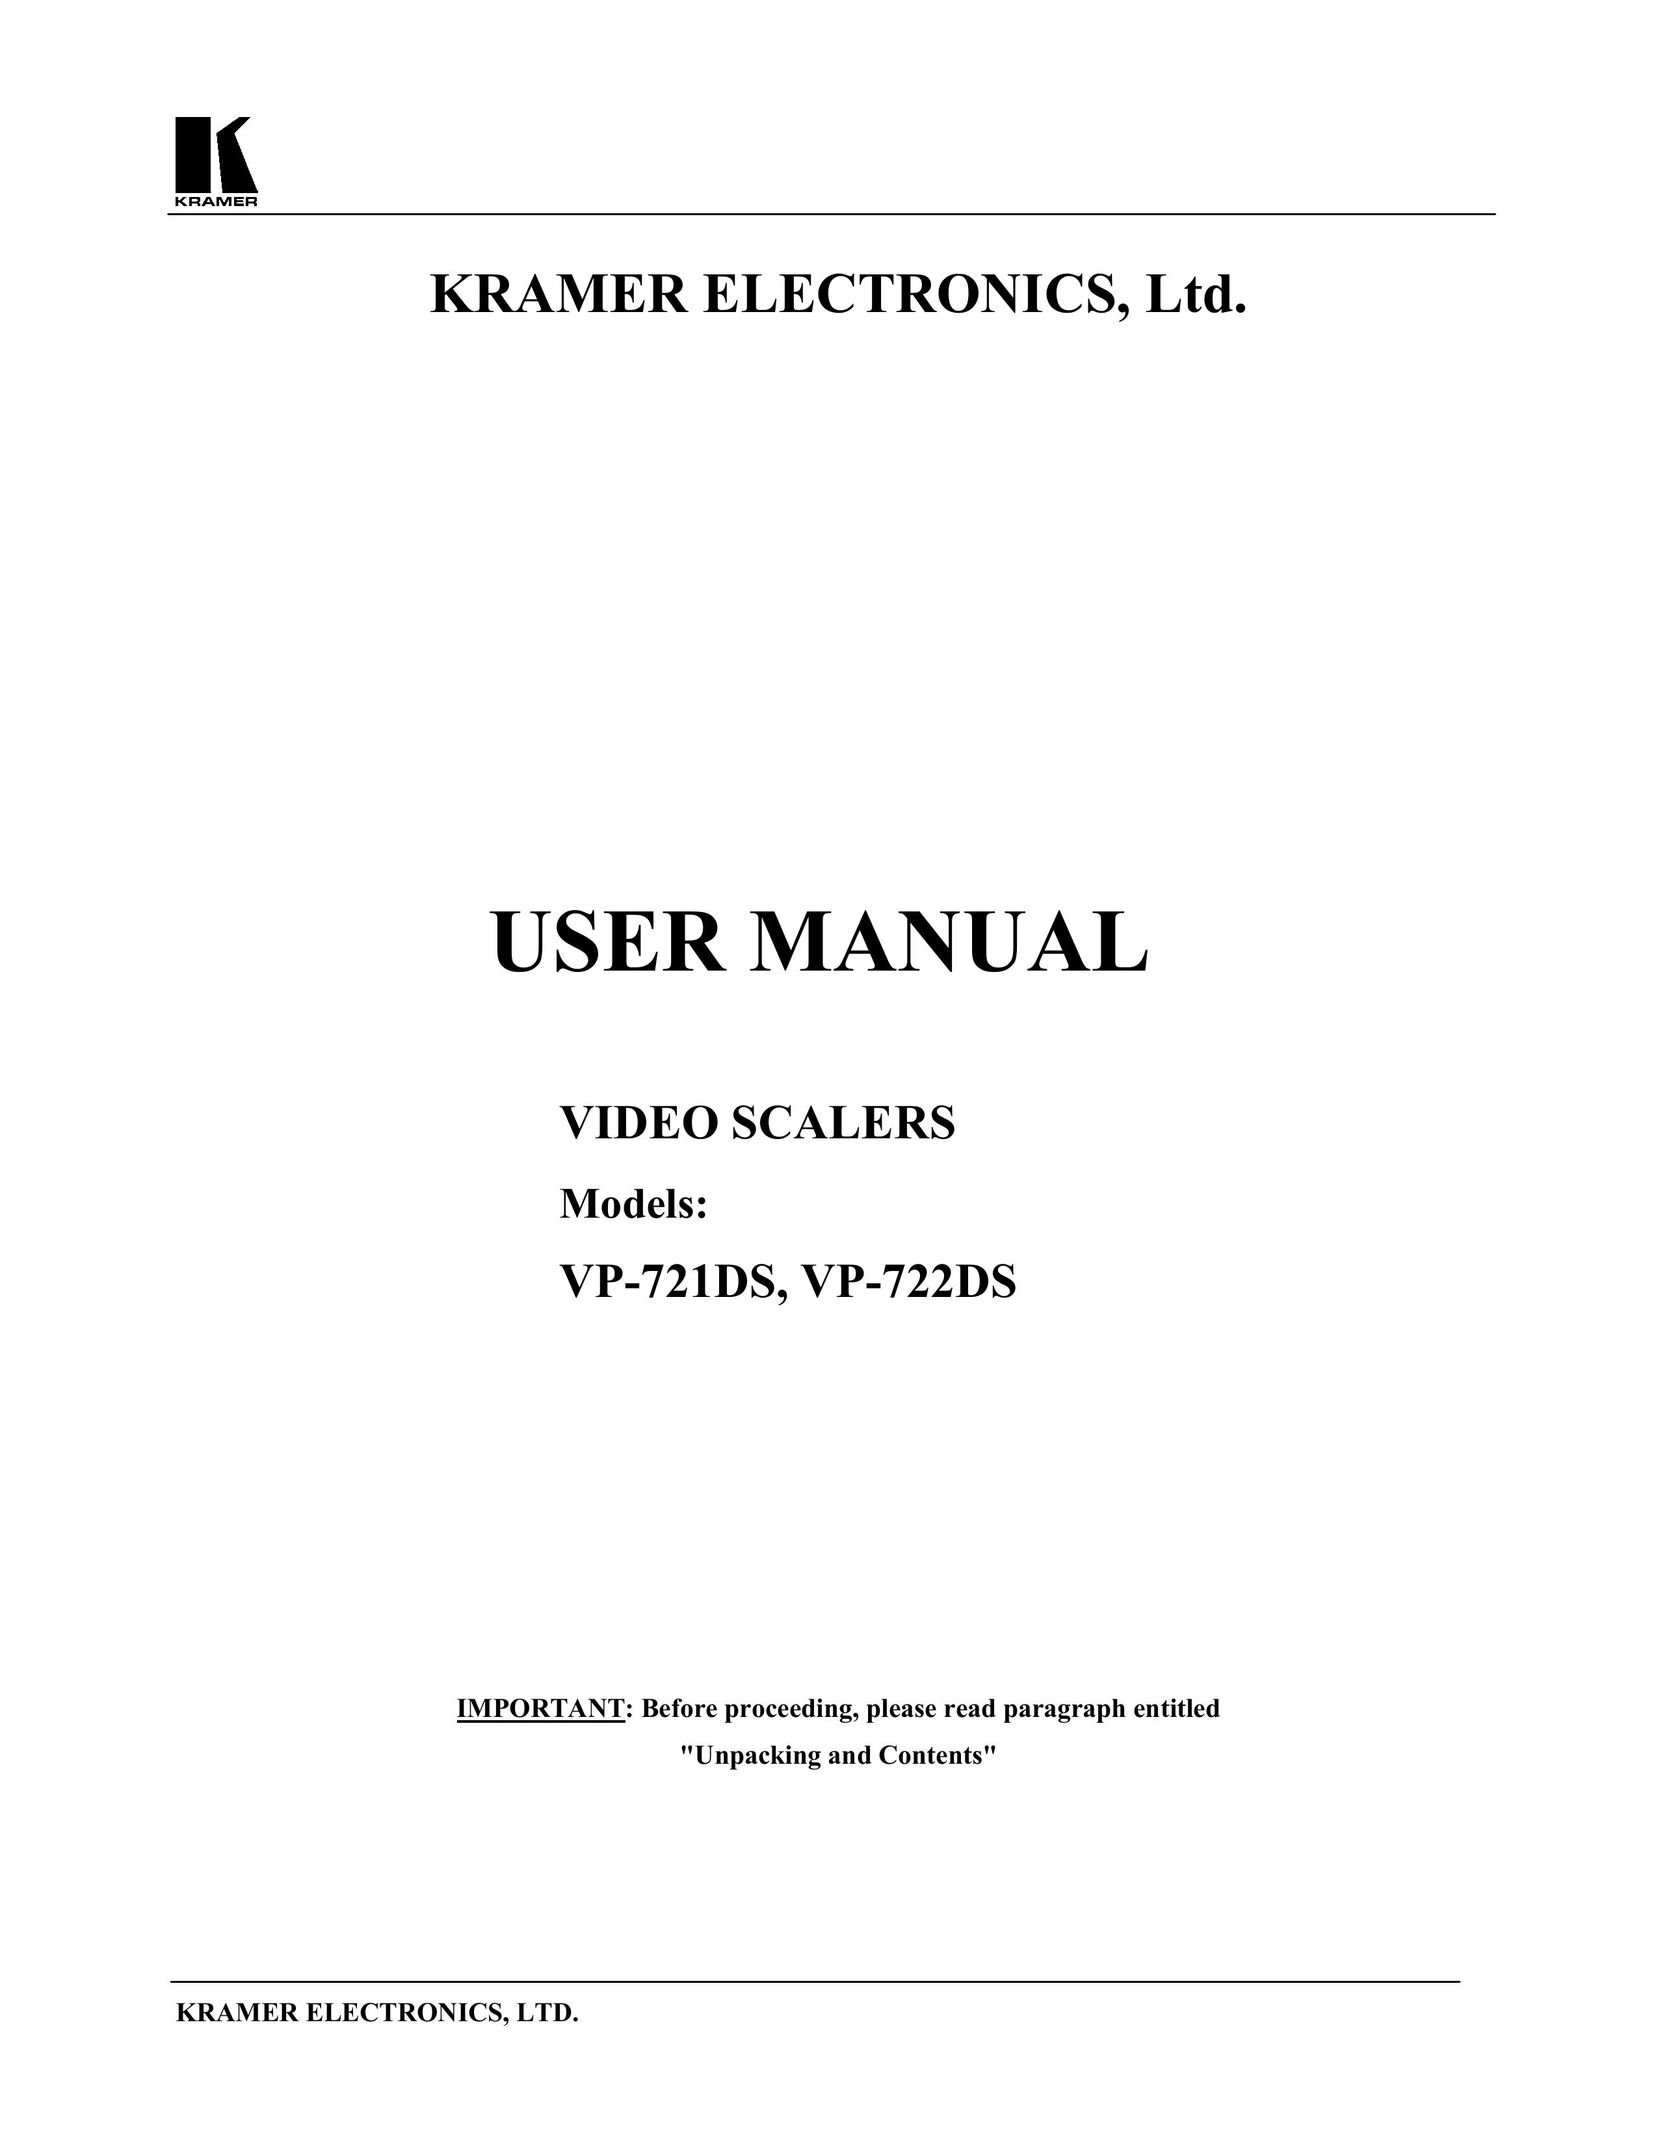 Kramer Electronics VP-722DS Webcam User Manual